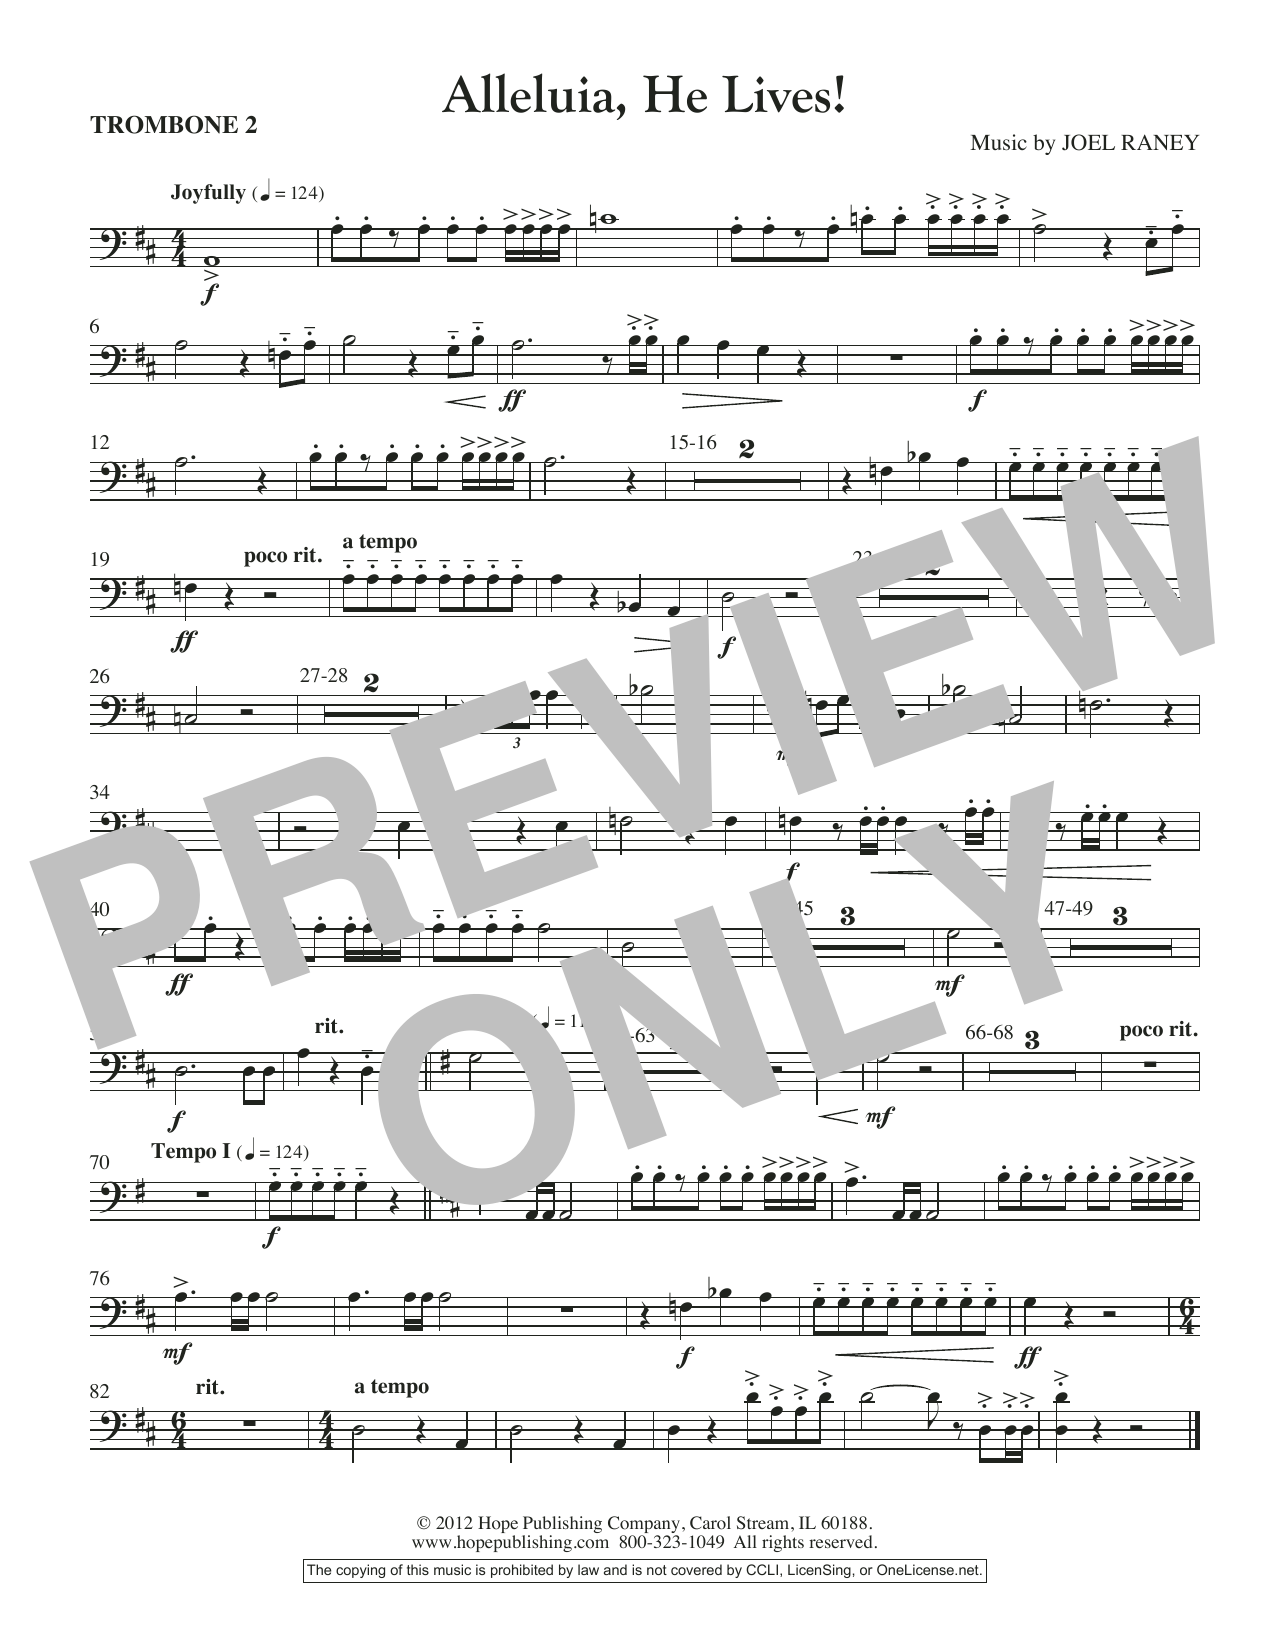 Download Joel Raney Alleluia, He Lives - Trombone 2 Sheet Music